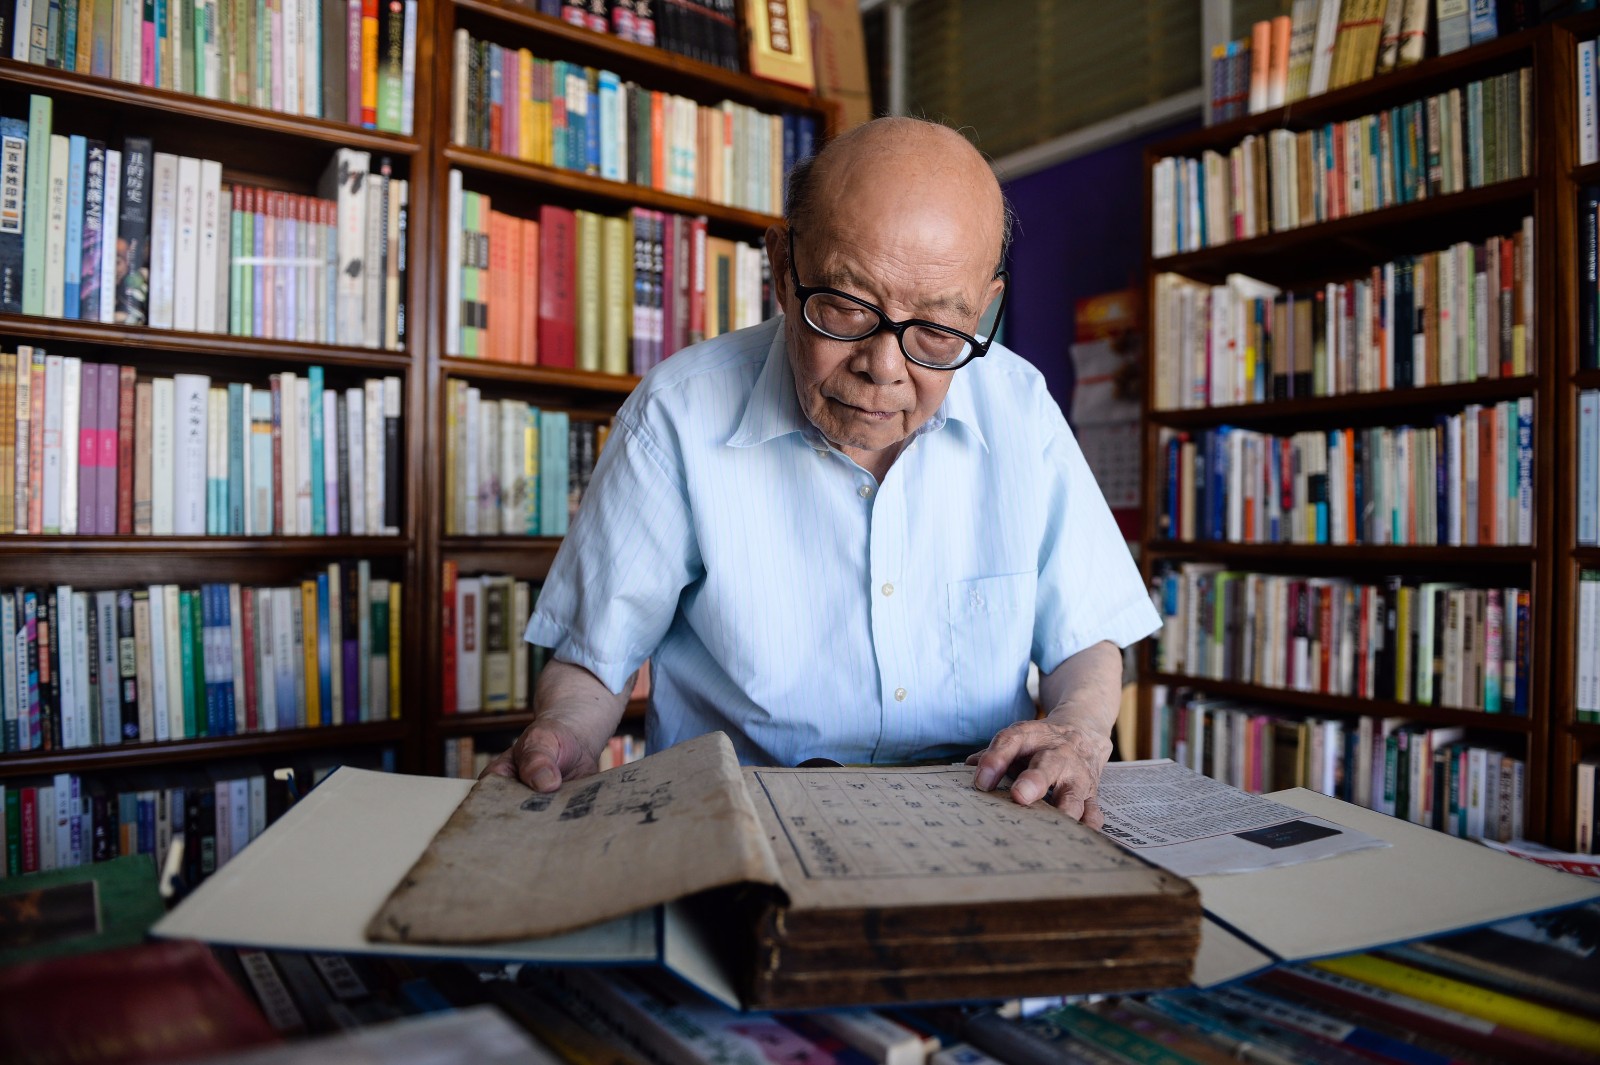   7月18日，江澄波老人在“文学山房”旧书店查看一本收藏的古书。 